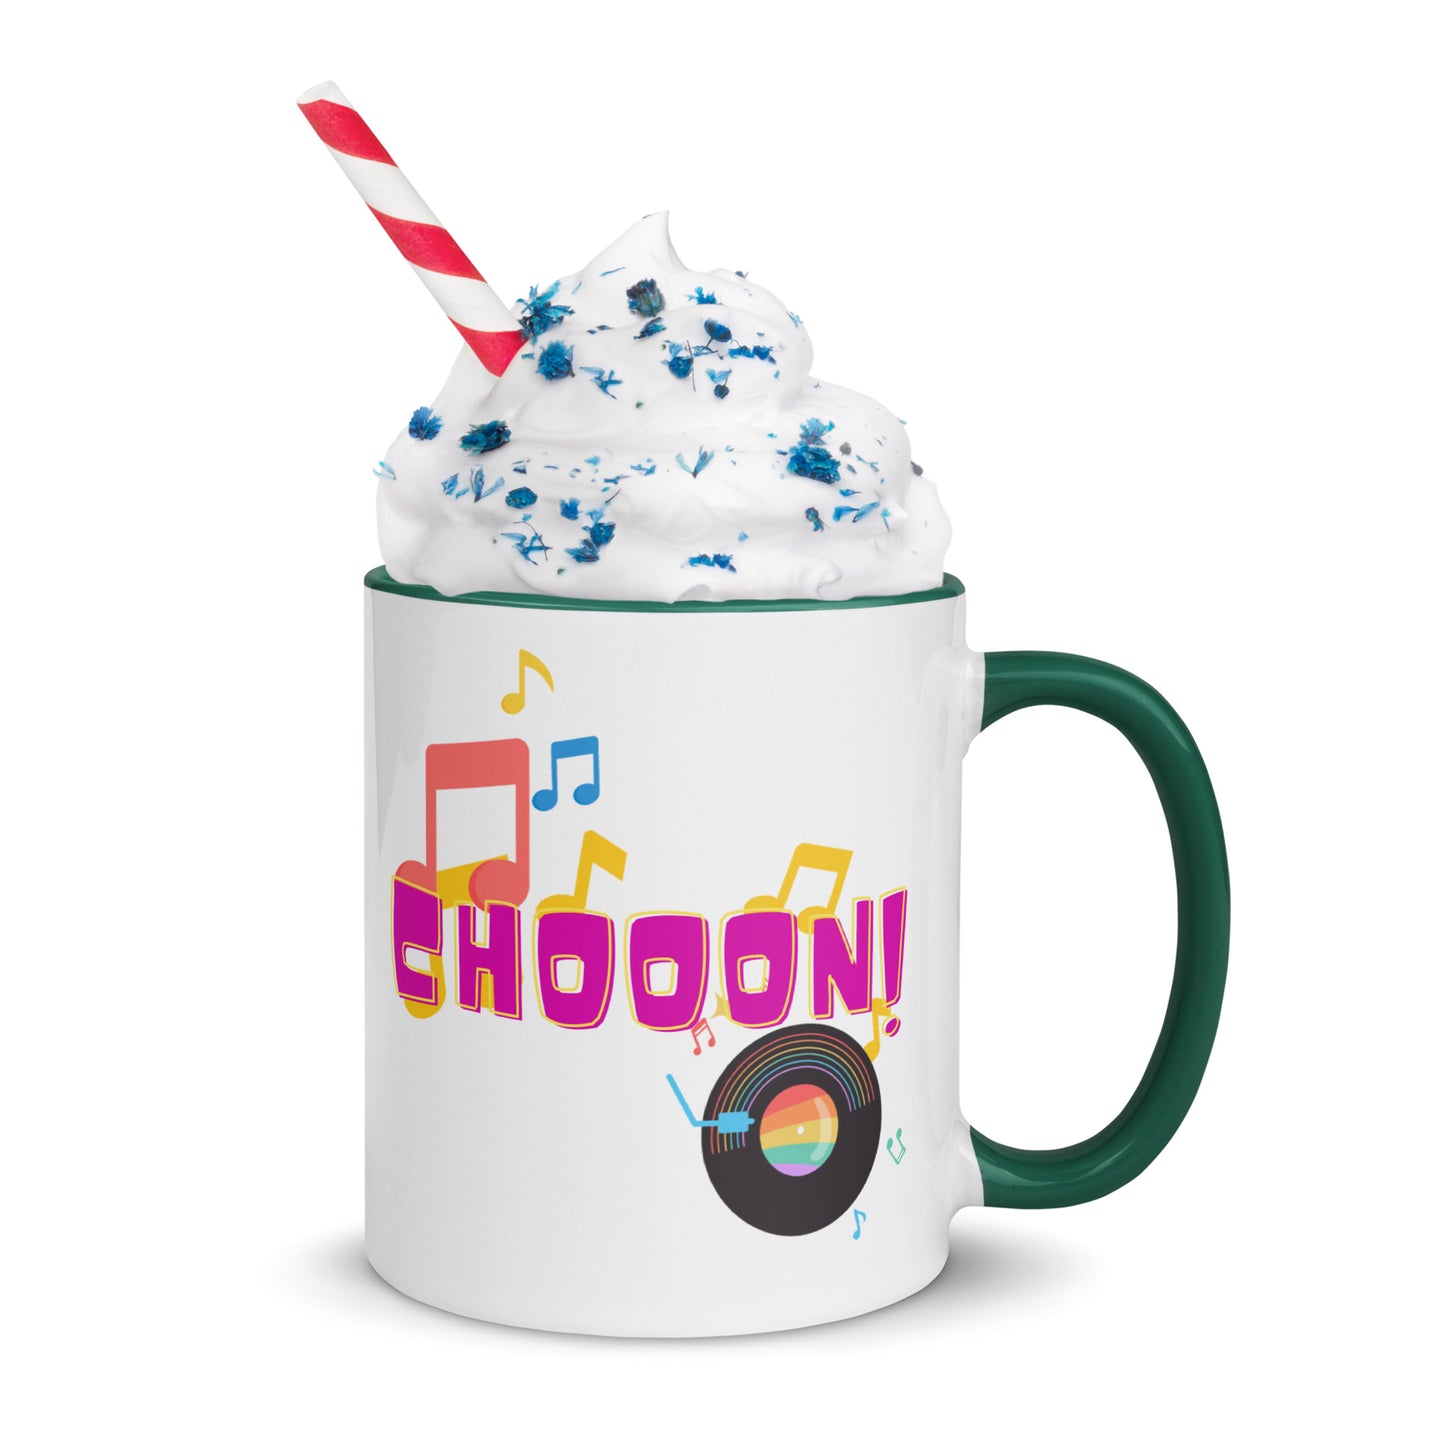 Indie Music Hunt Chooon! Mug With Color Inside